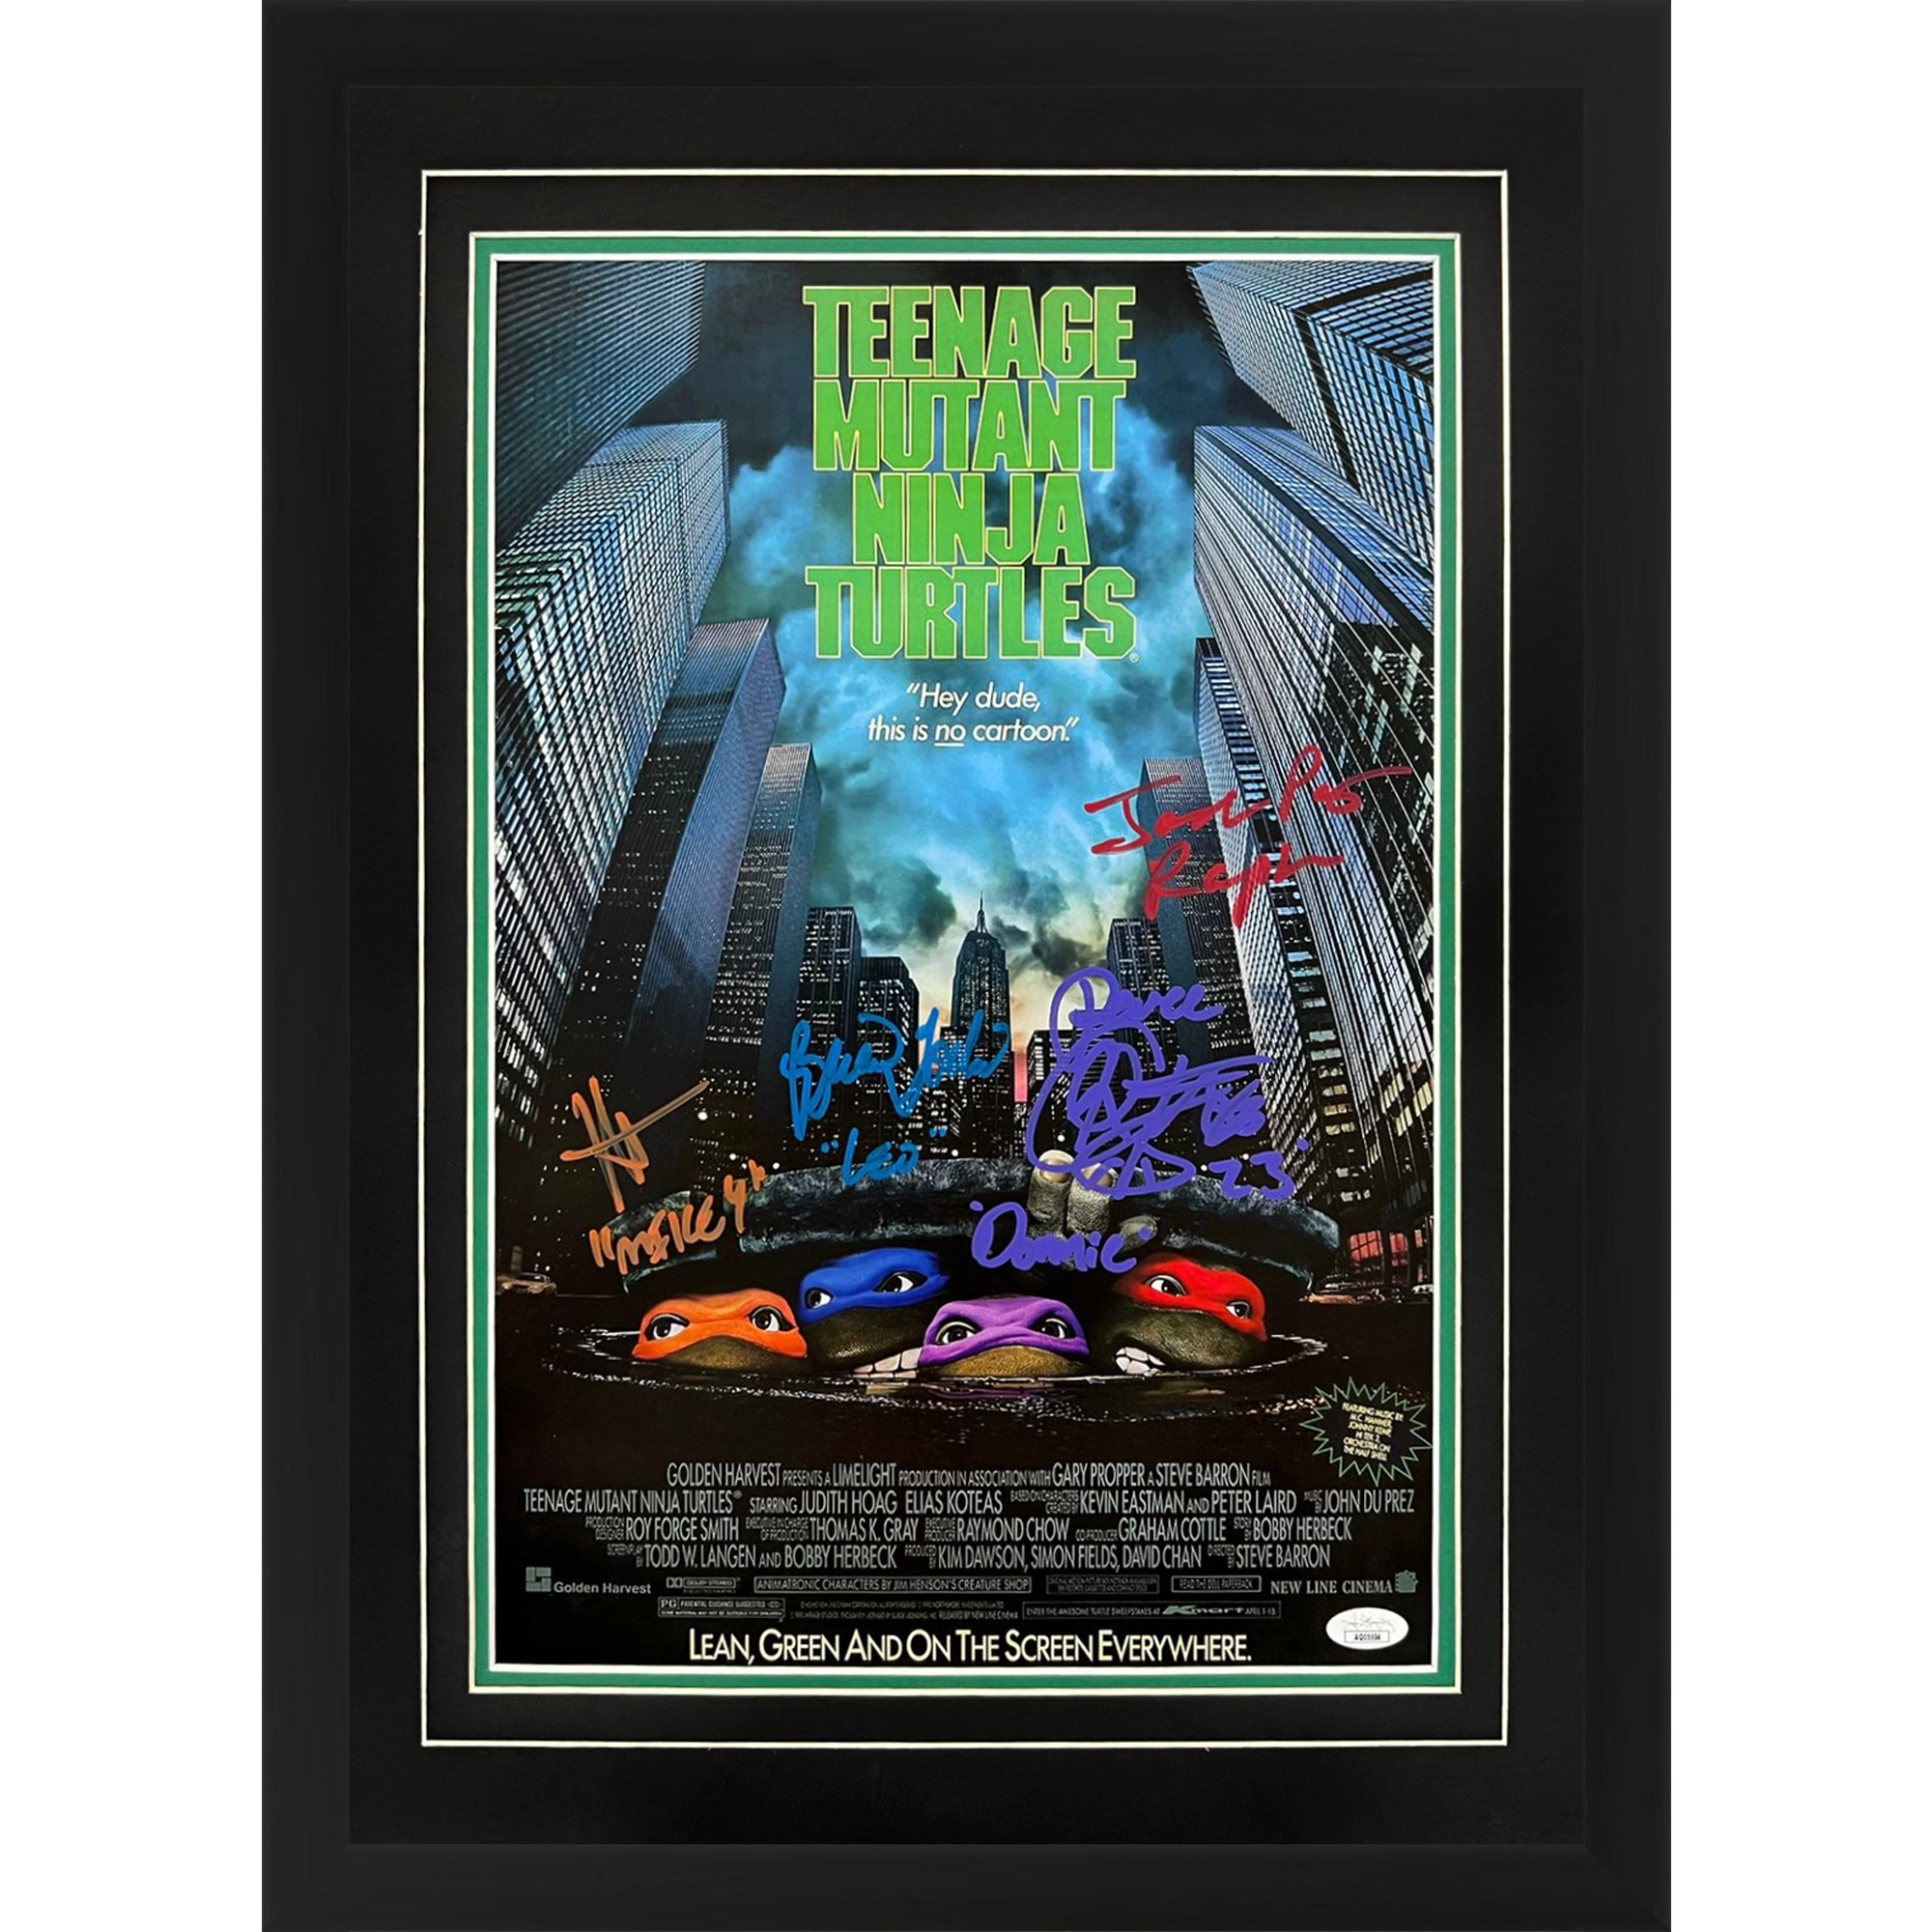 Teenage Mutant Ninja Turtles Movie Cast Autographed 12x18 Deluxe Framed Movie Poster 4 signatures - JSA